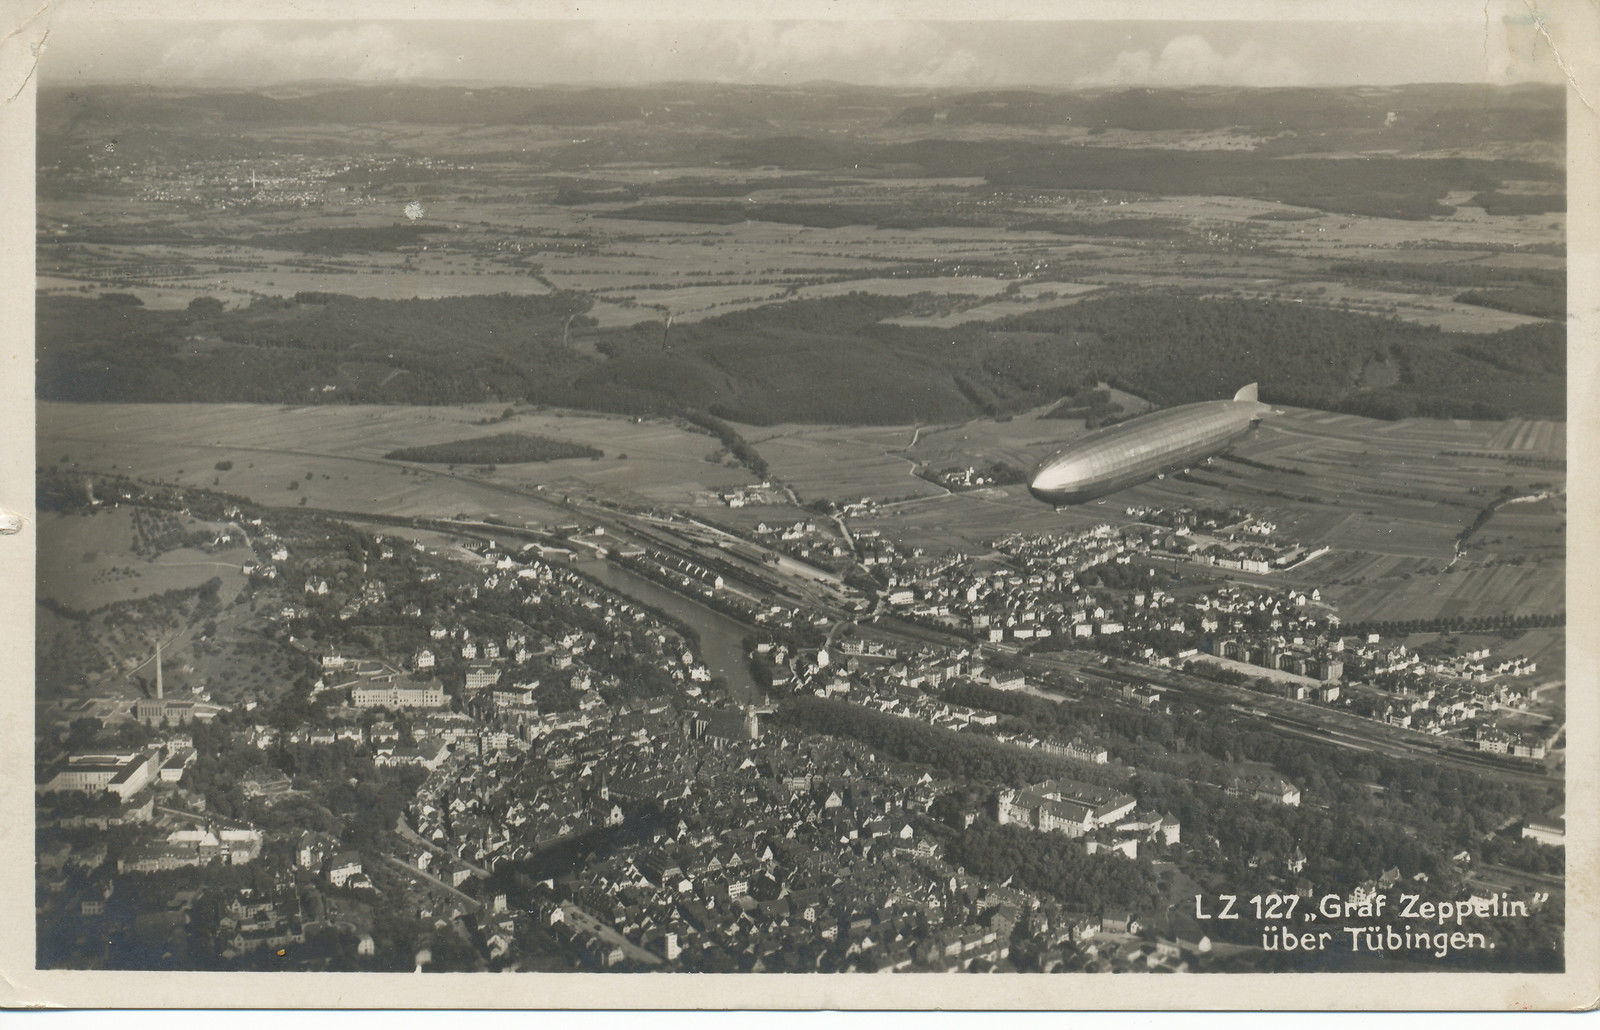 LZ 127 Graf Zeppelin über Tübingen auf einer Postkarte von H. Sting